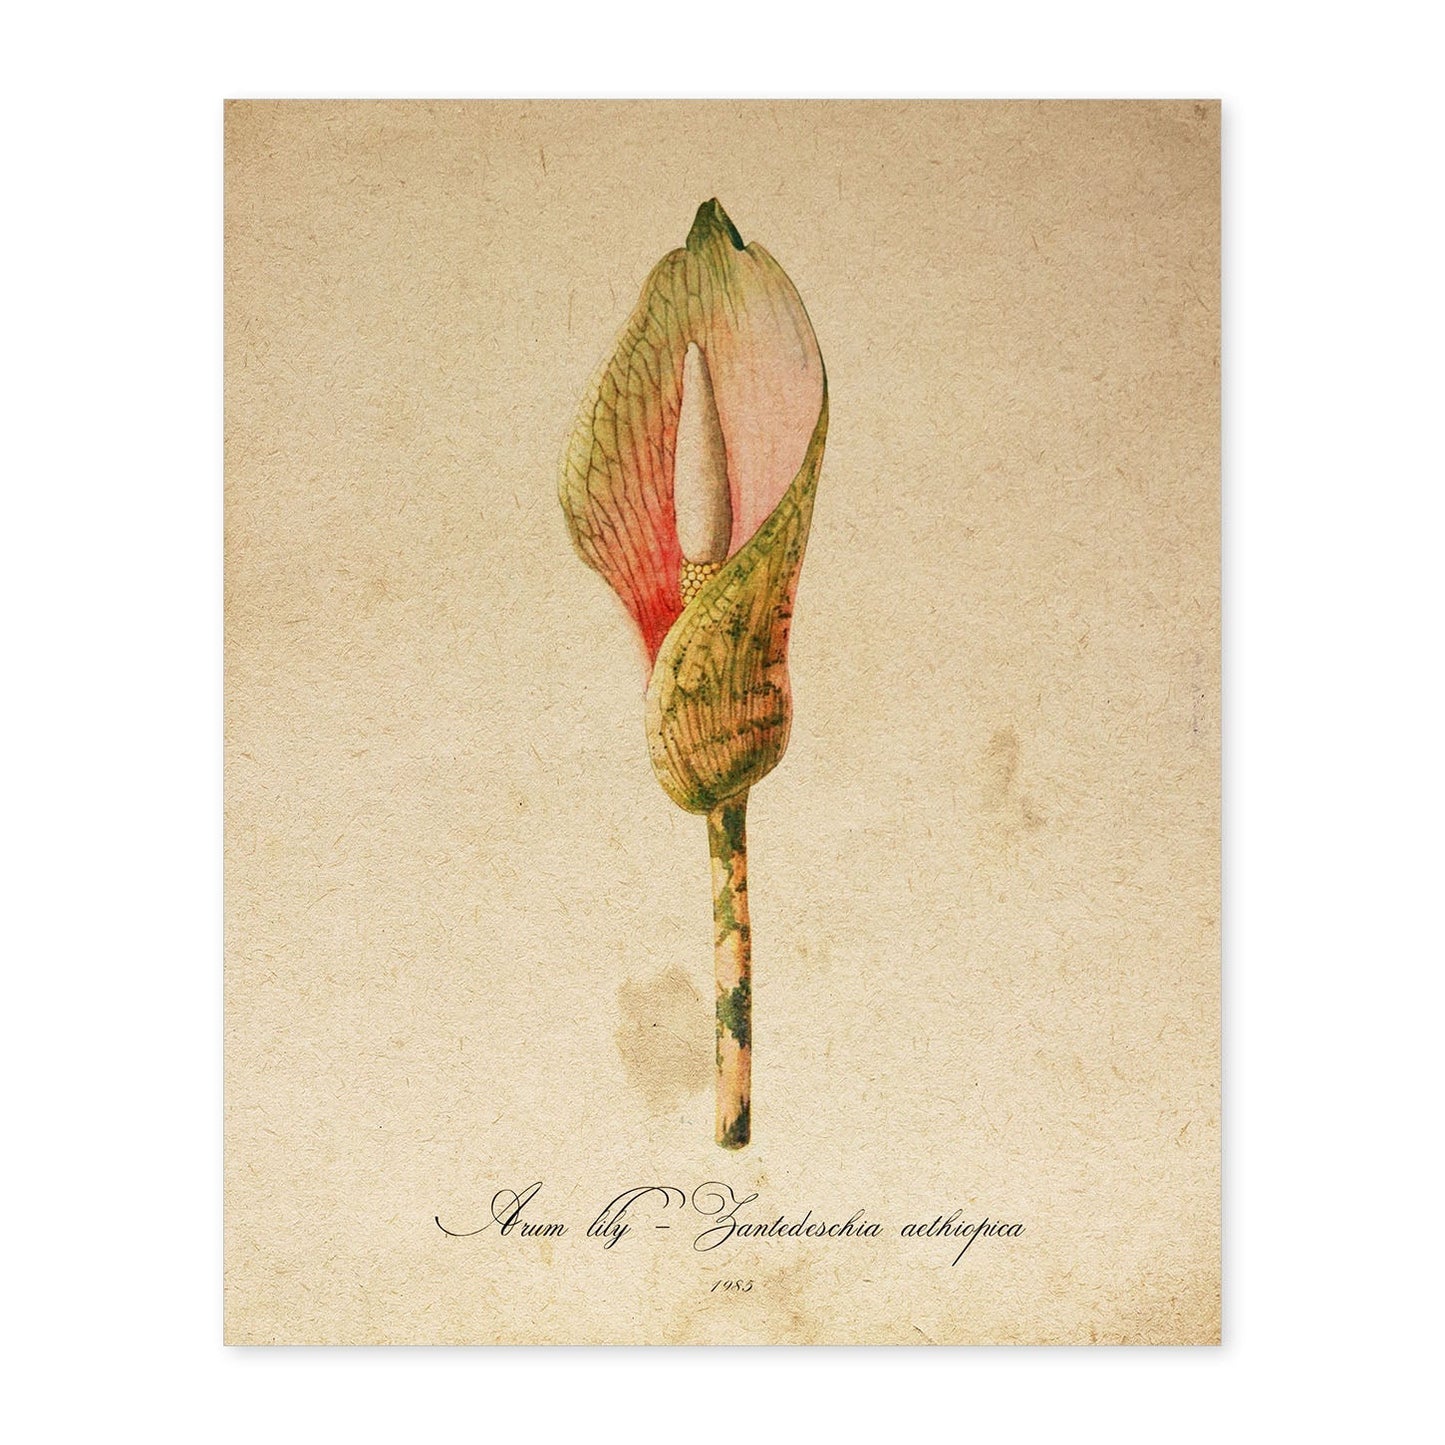 Poster de flores vintage. Lámina Arum lily con diseño vintage.-Artwork-Nacnic-A4-Sin marco-Nacnic Estudio SL